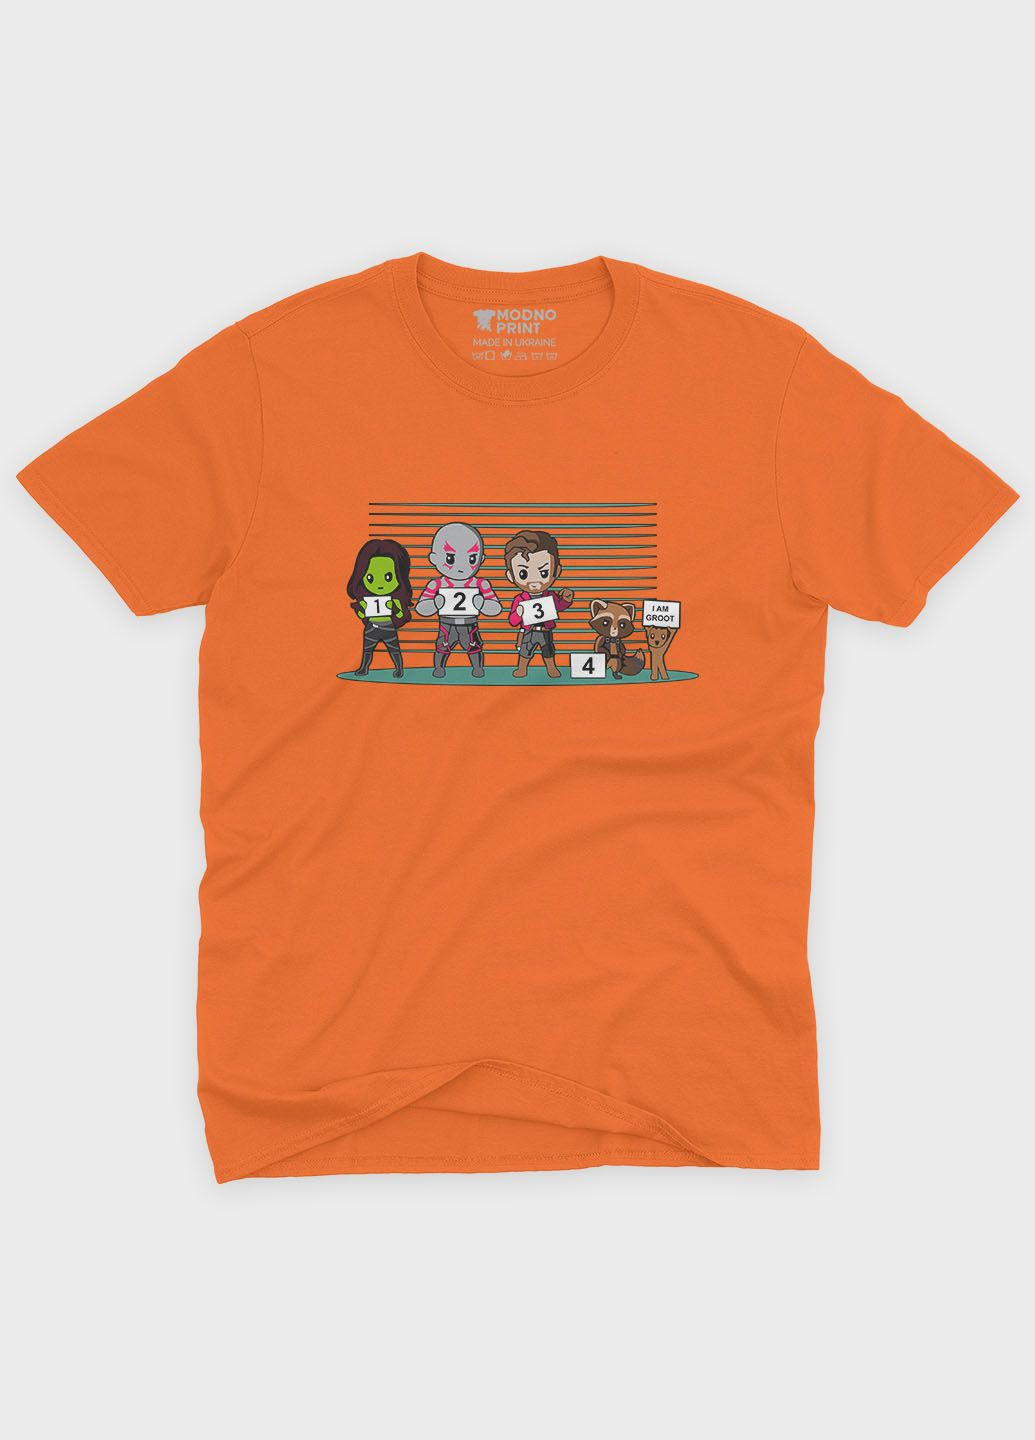 Оранжевая демисезонная футболка для мальчика с принтом супергероев - стражи галактики (ts001-1-ora-006-017-009-b) Modno